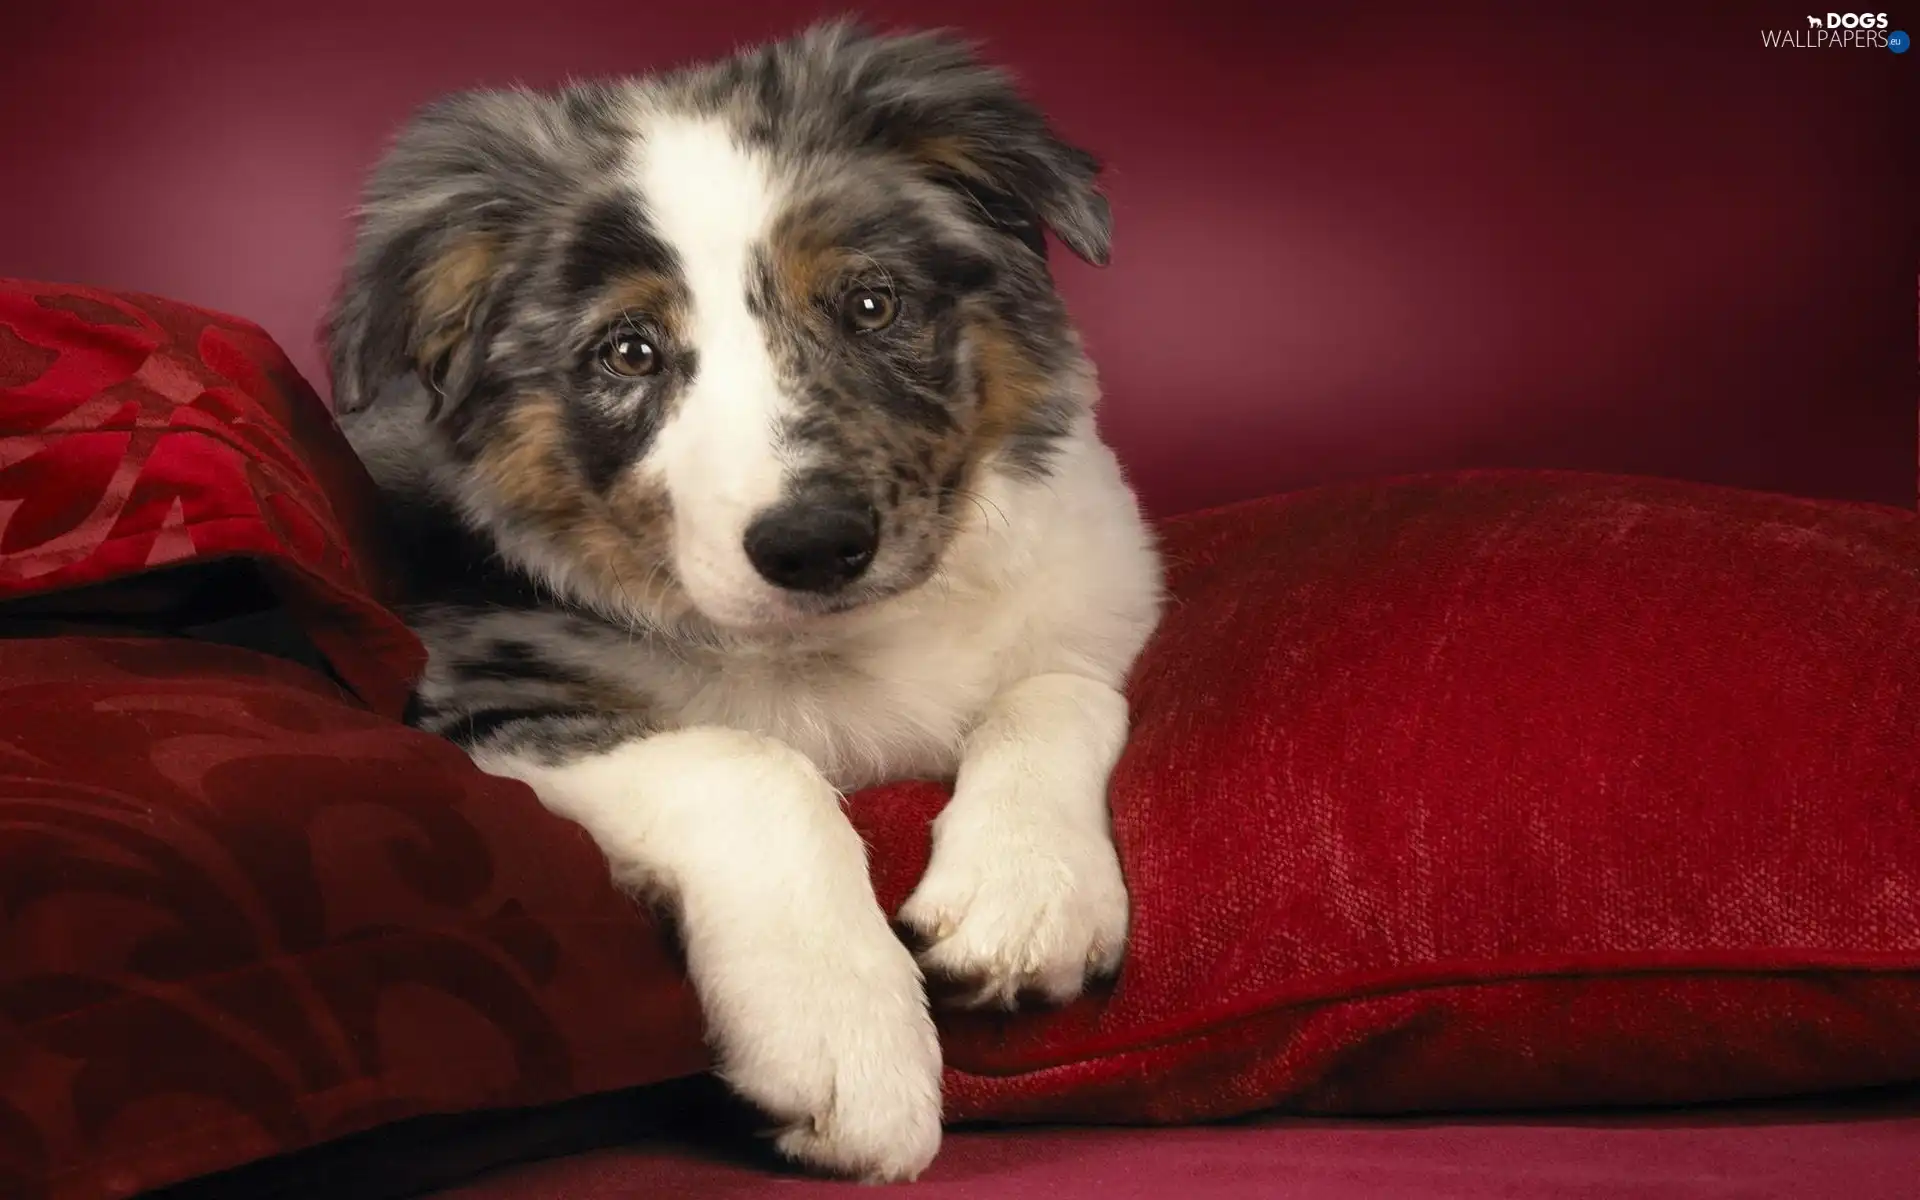 Sofa, pillows, dog